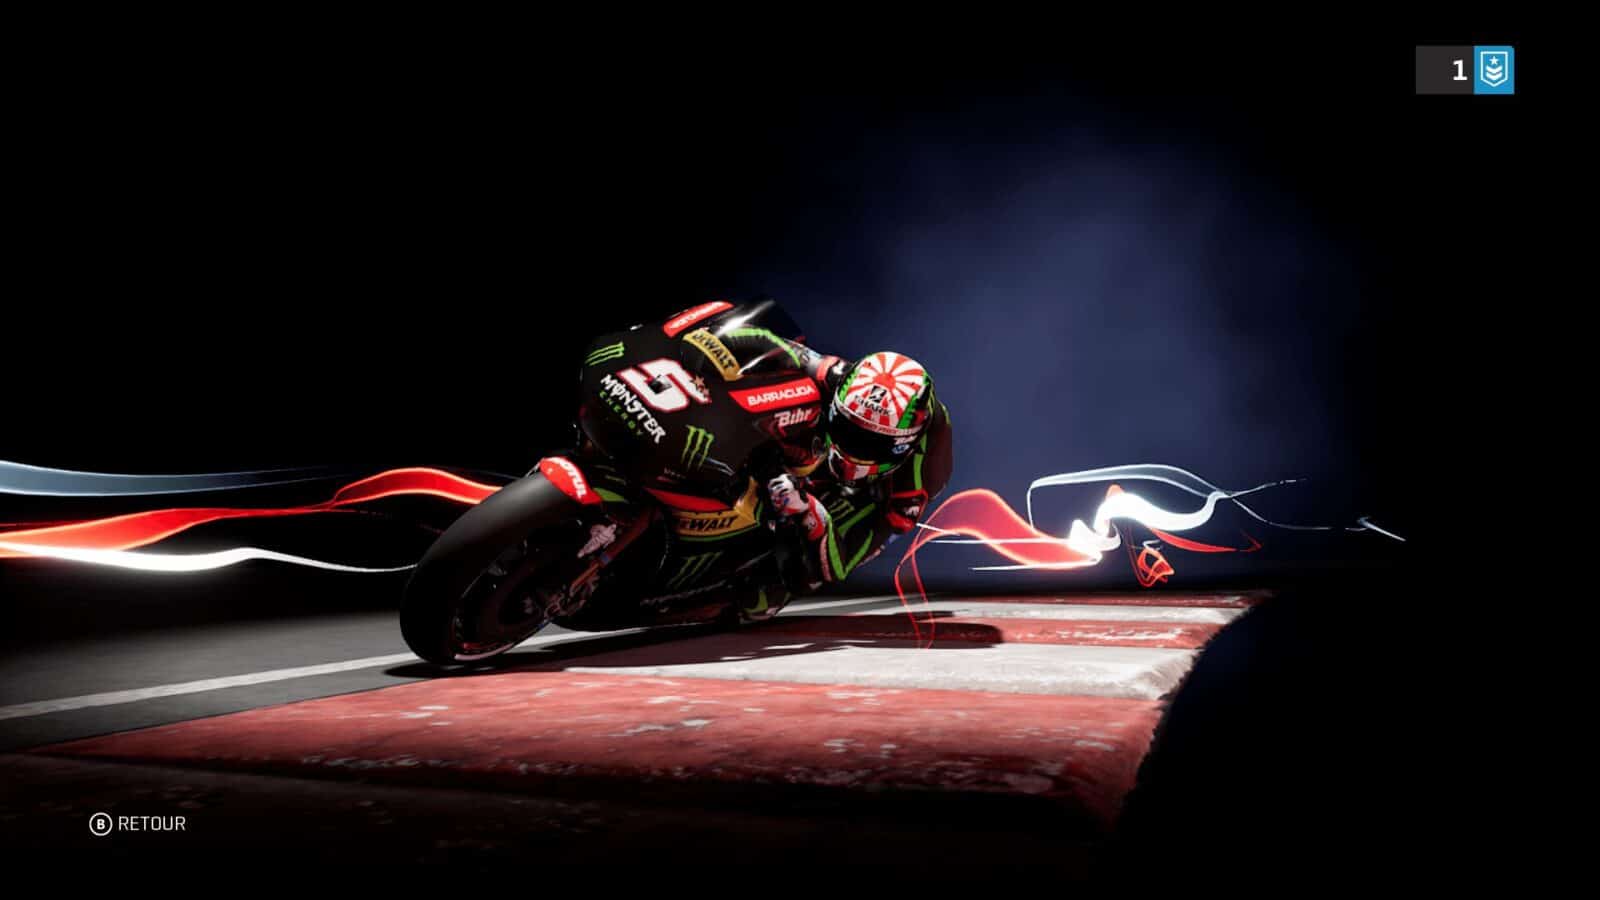 MotoGP 18 Kresys MotoGP18 20180904 17 00 32 MotoGP 18 – La simulation moto par excellence ? gaming